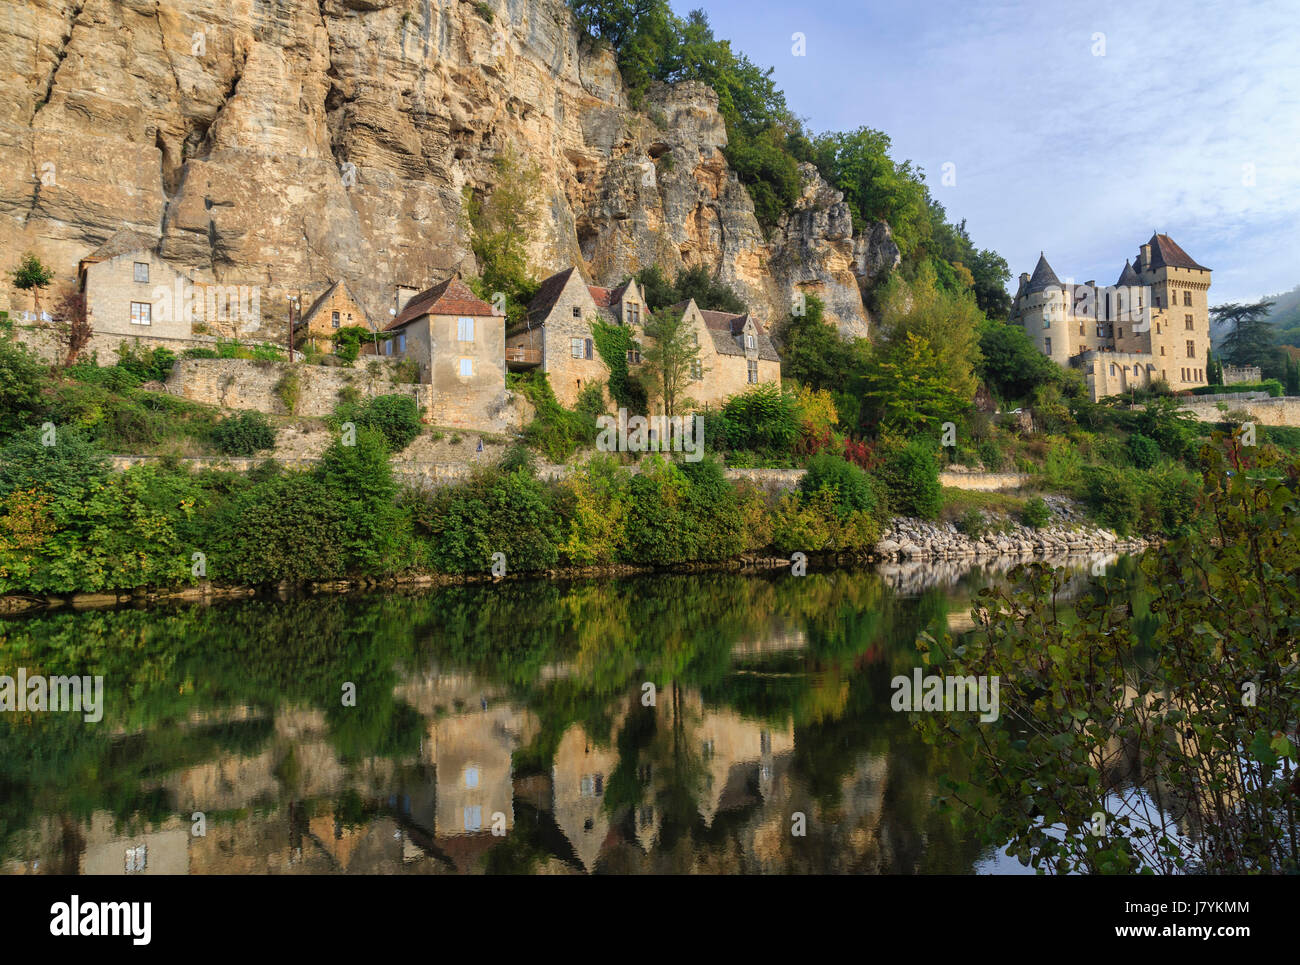 Frankreich, Dordogne, Vezac, Dordogne, Malartie Castle am Eingang des Dorfes La Roque Gageac Stockfoto